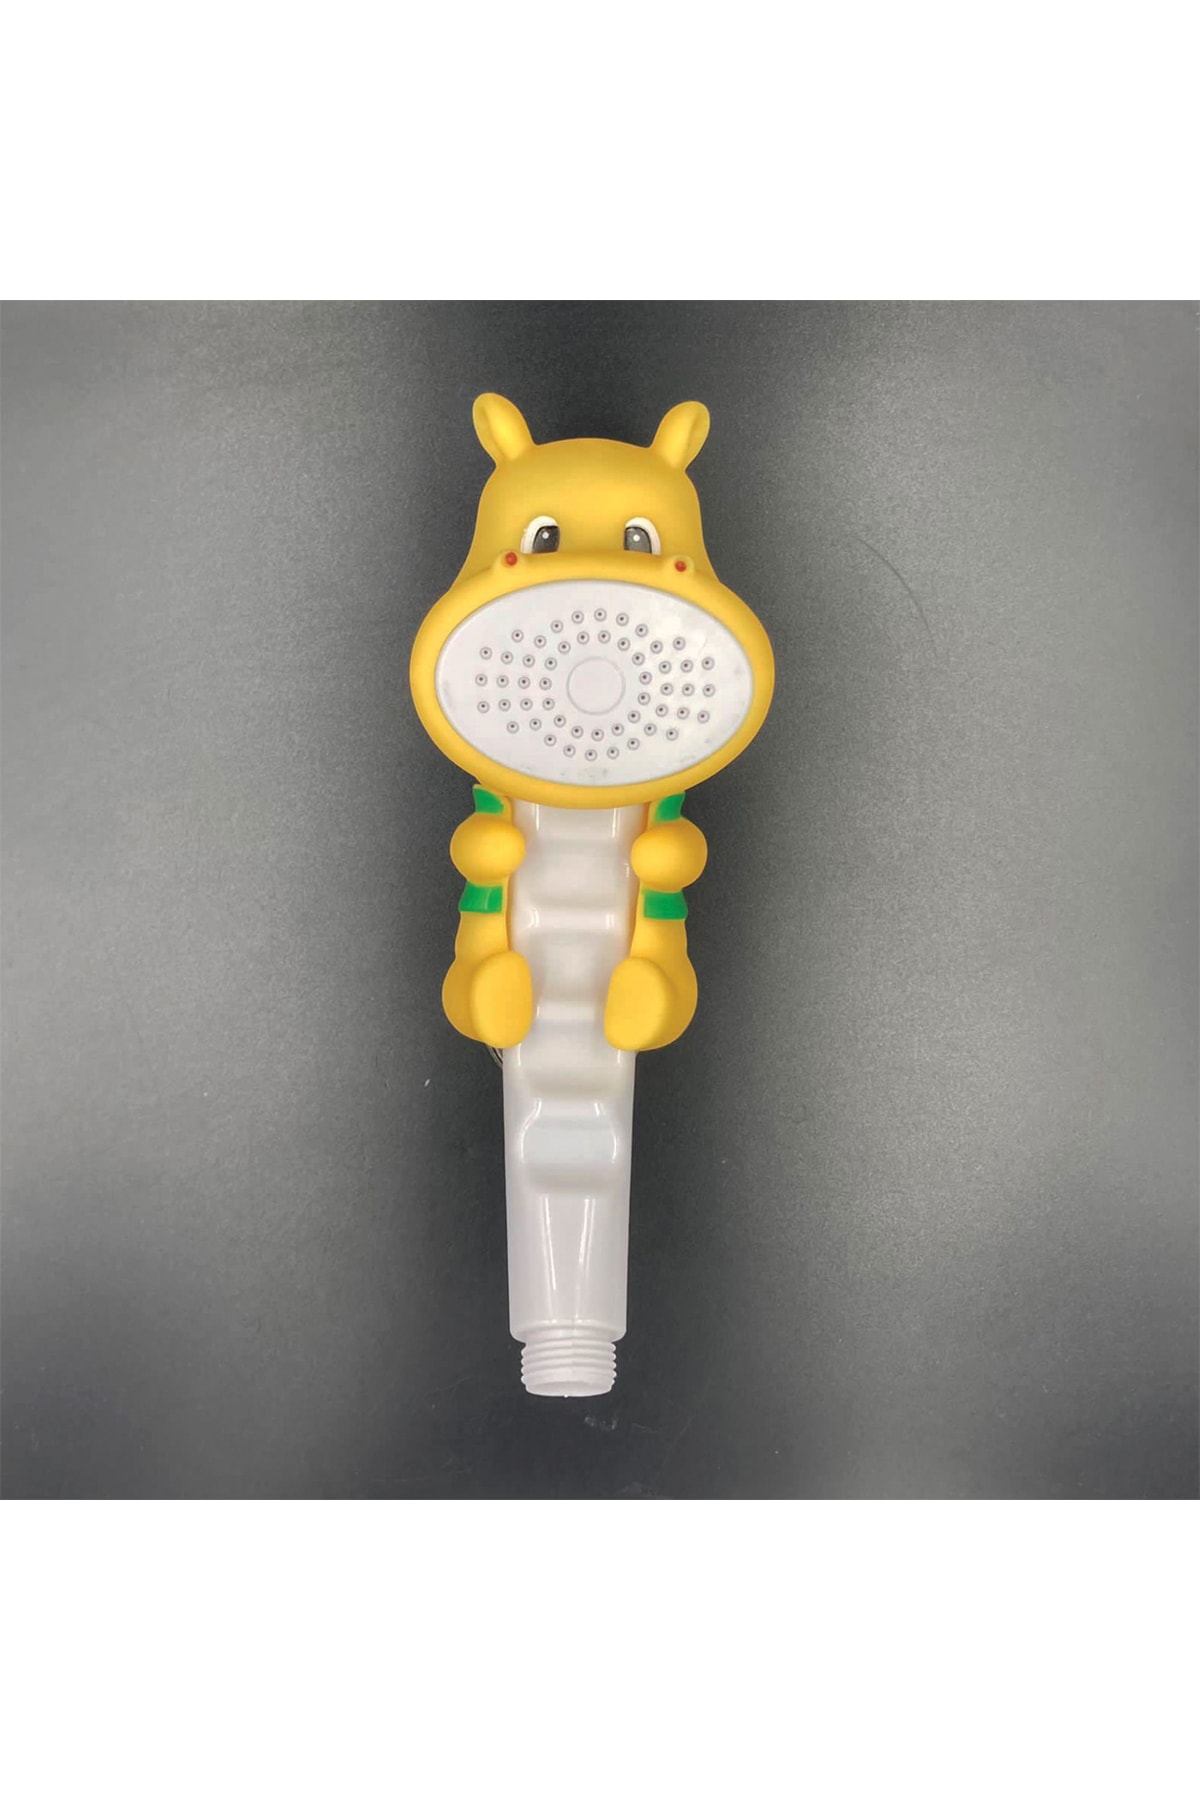 BlueFox Su Aygırı Şekilli Banyo Ve Duş Teşvik Edici Çocuk Duş Başlığı NE9504